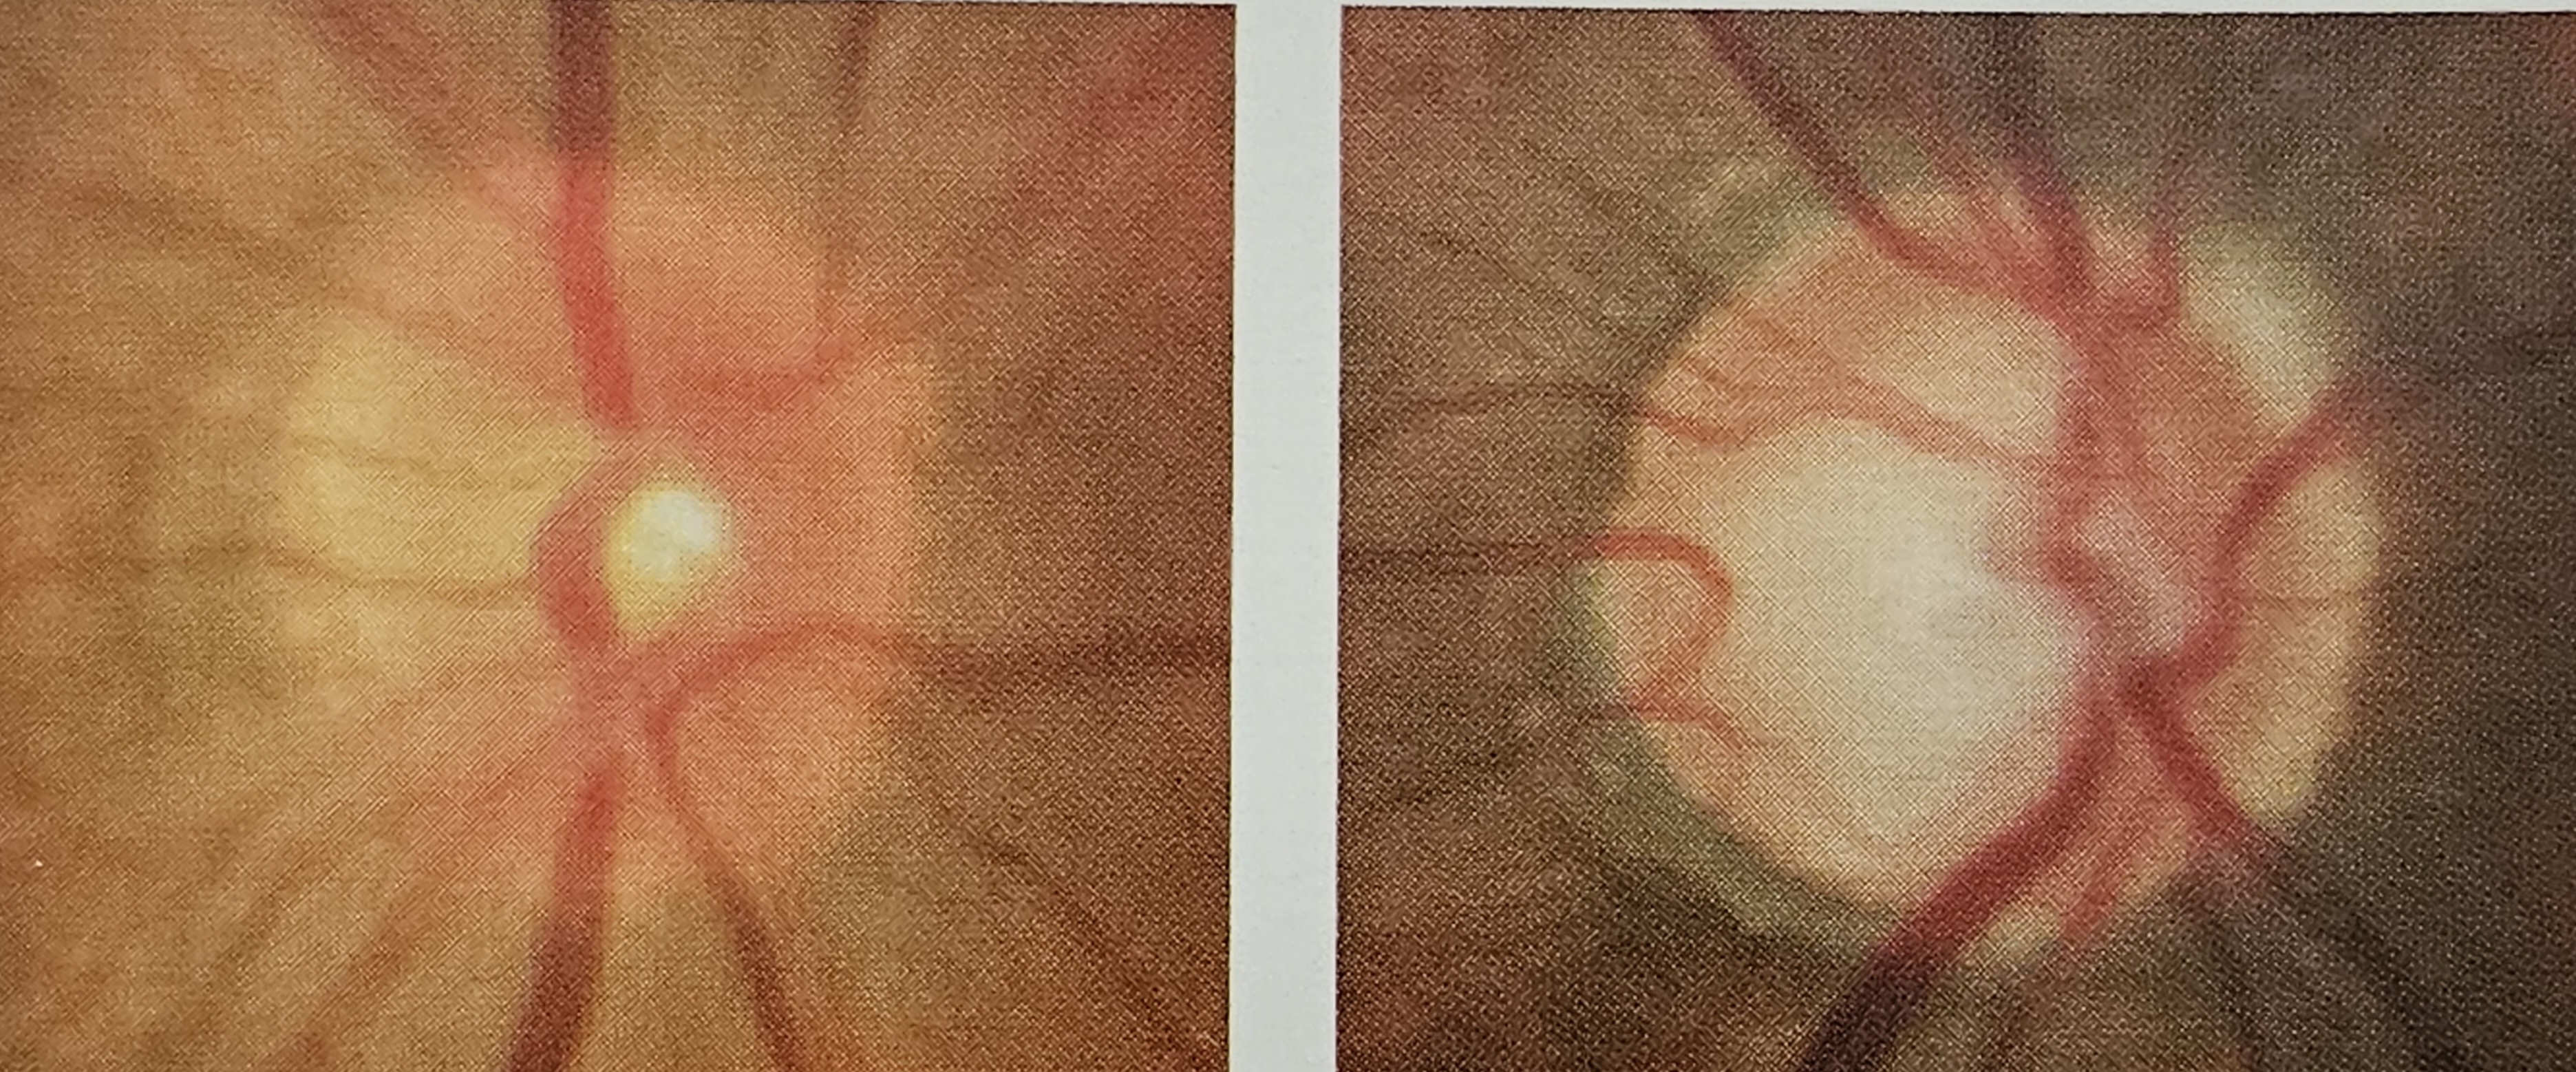 정상인의 시신경 모양(좌) 녹내장 환자의 시신경 모양(우)